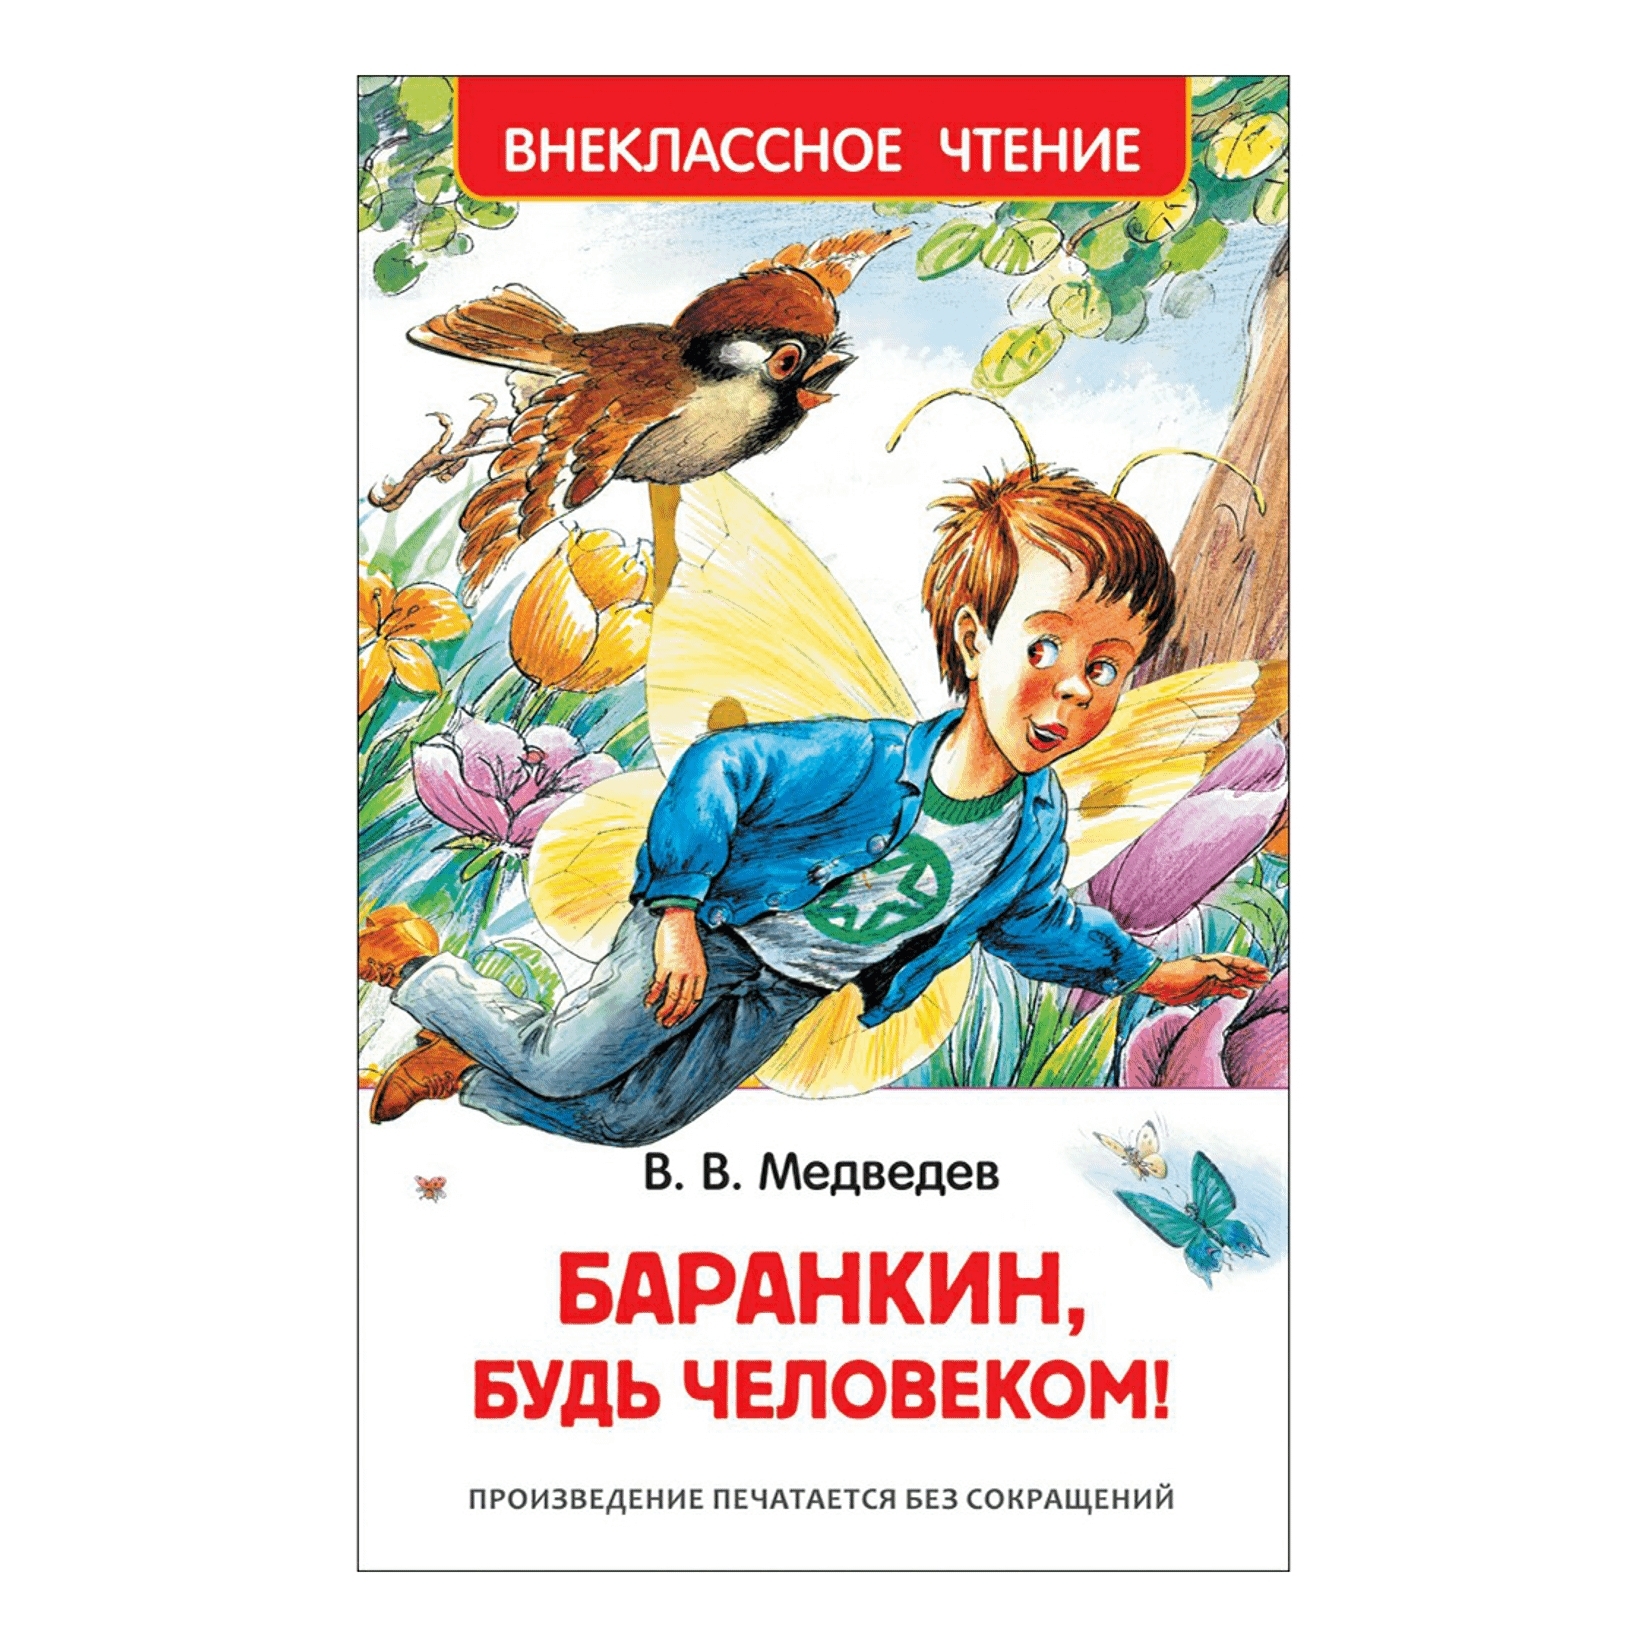 Быть человеком произведение. Книга Медведева Баранкин будь человеком. Медведев Баранкин будь человеком обложка.